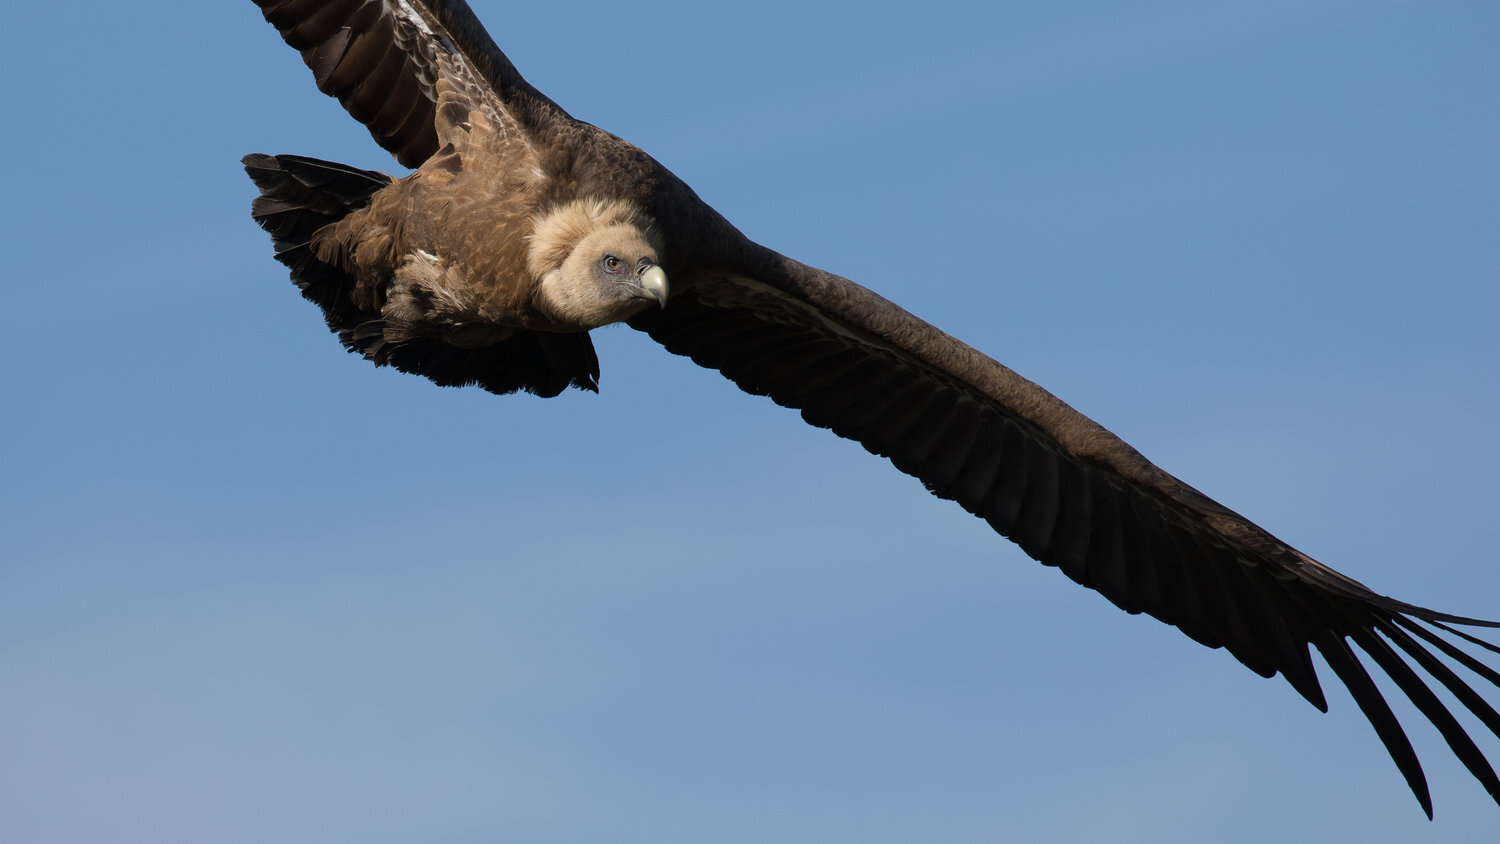 vautour fauve+salva fauna+france (1).jpg